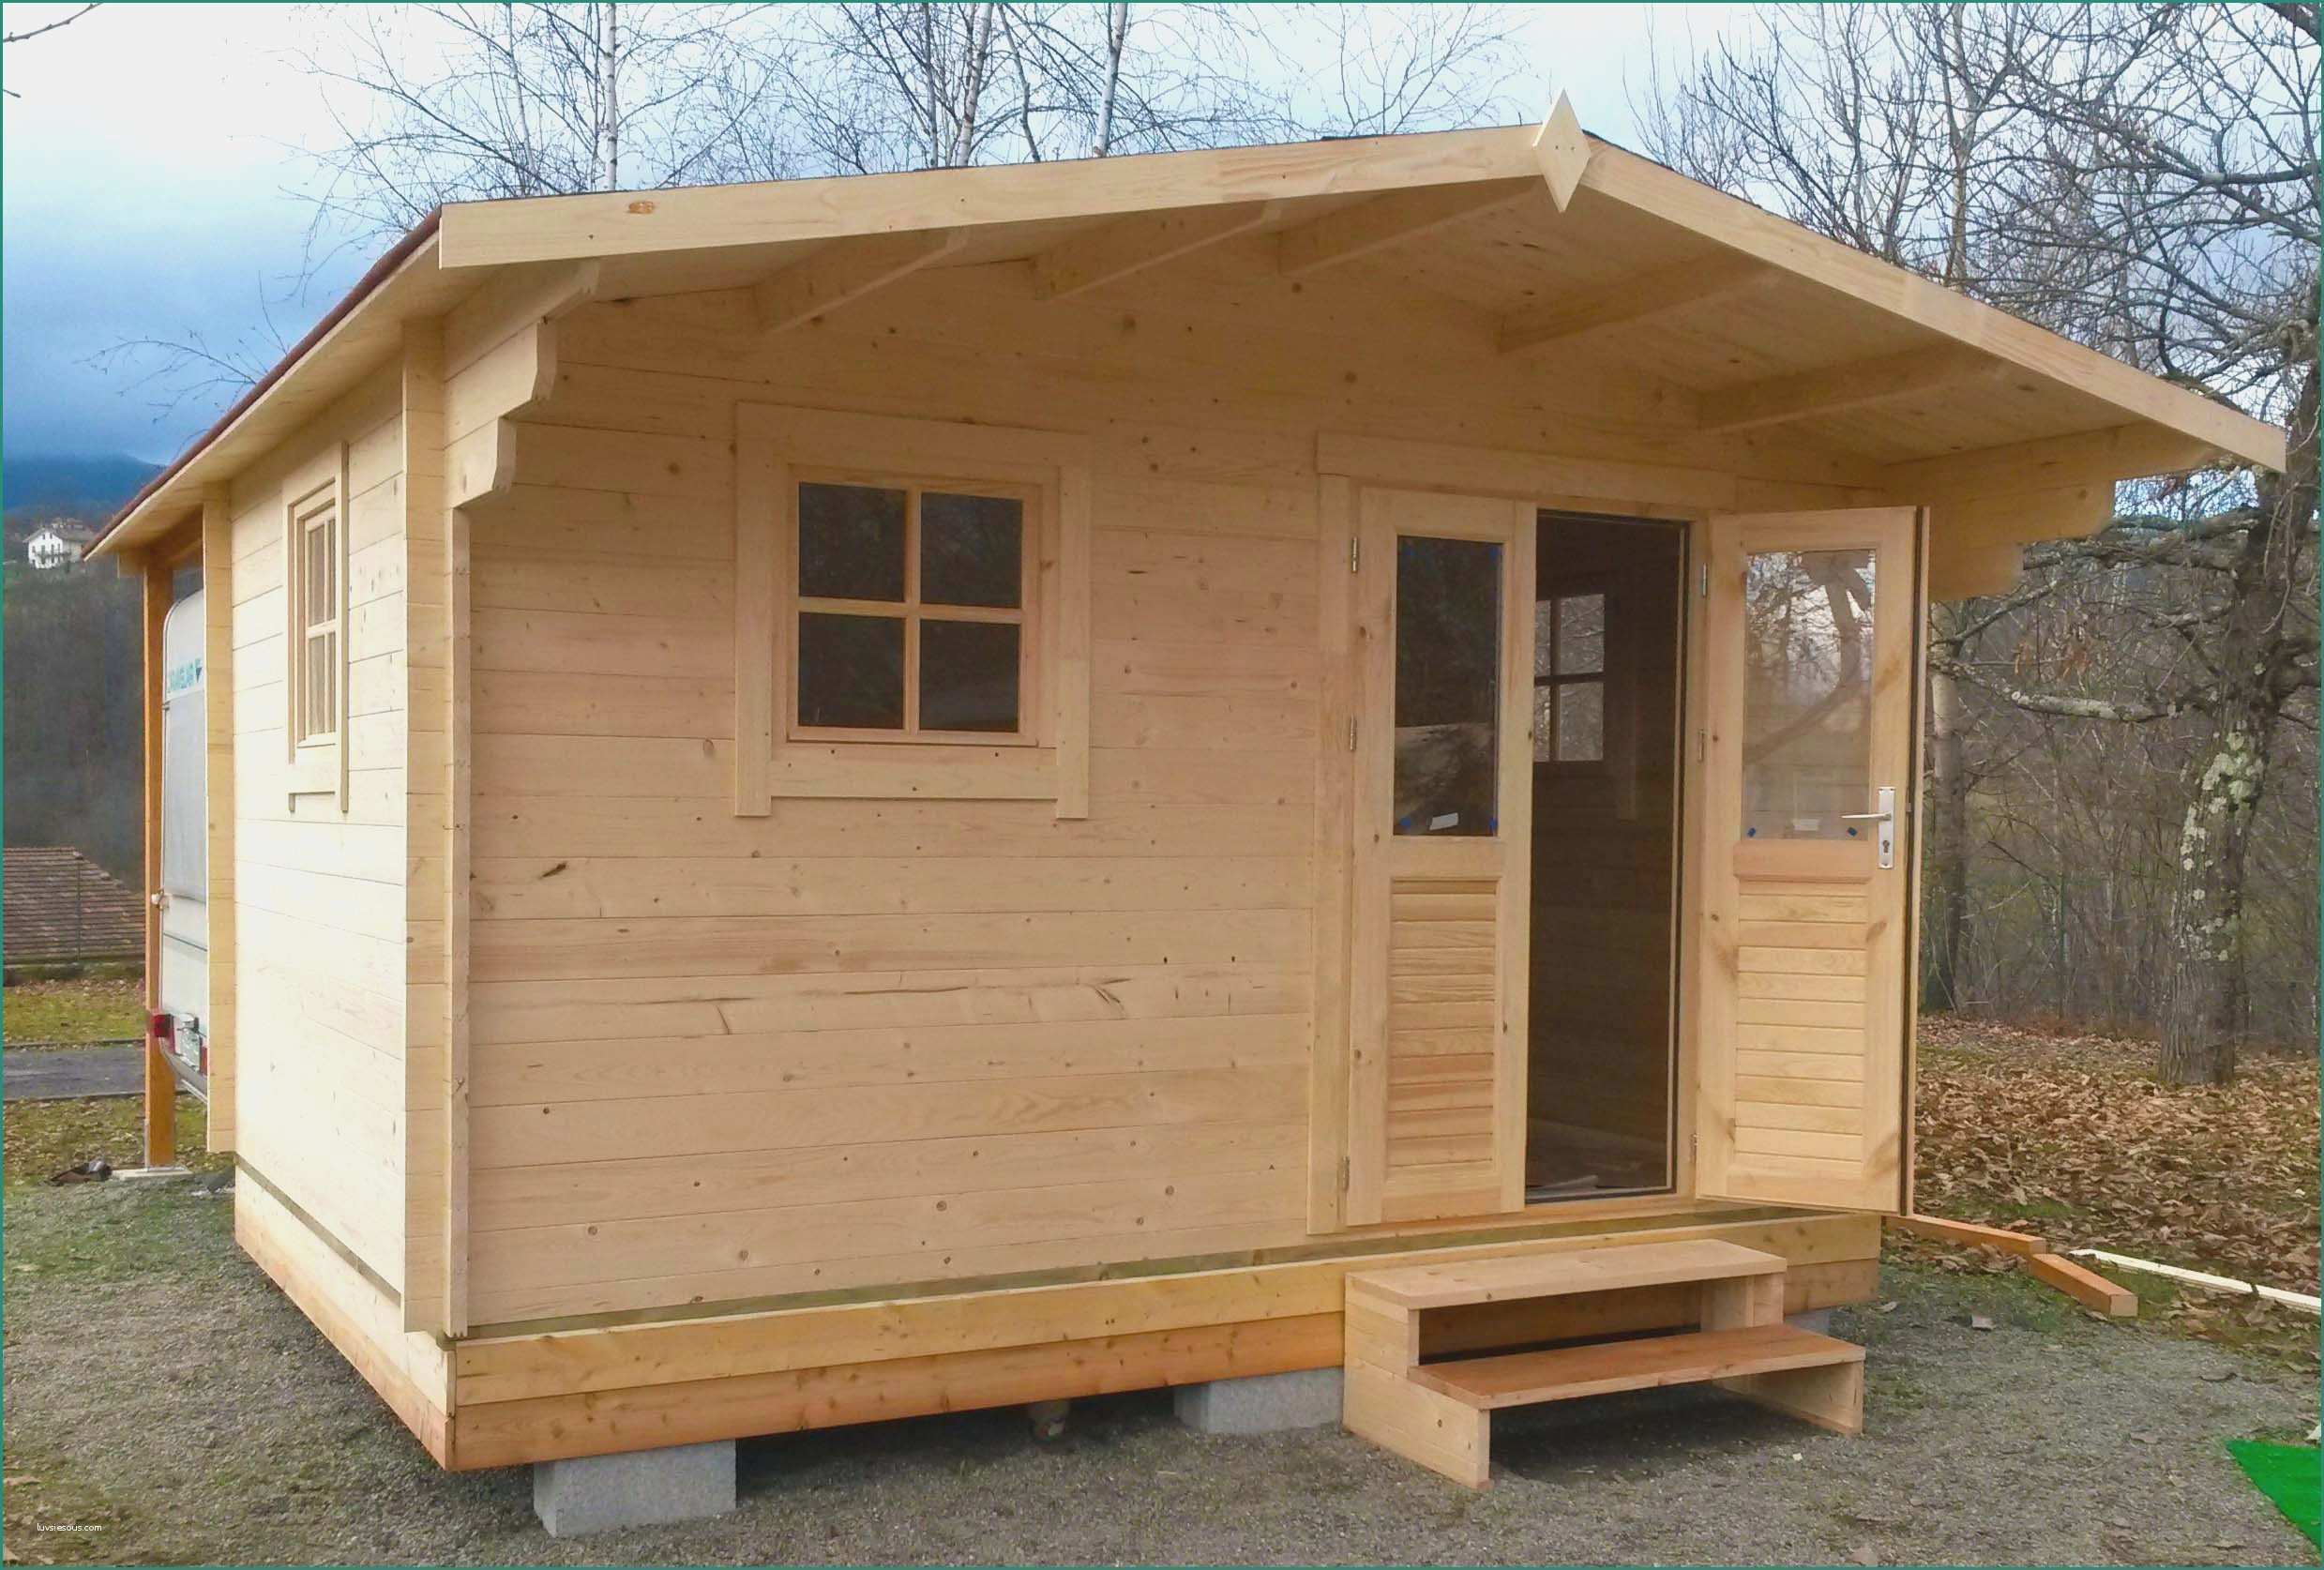 Case in legno su terreno agricolo e elegante case mobili for Casa prefabbricata in legno su terreno agricolo